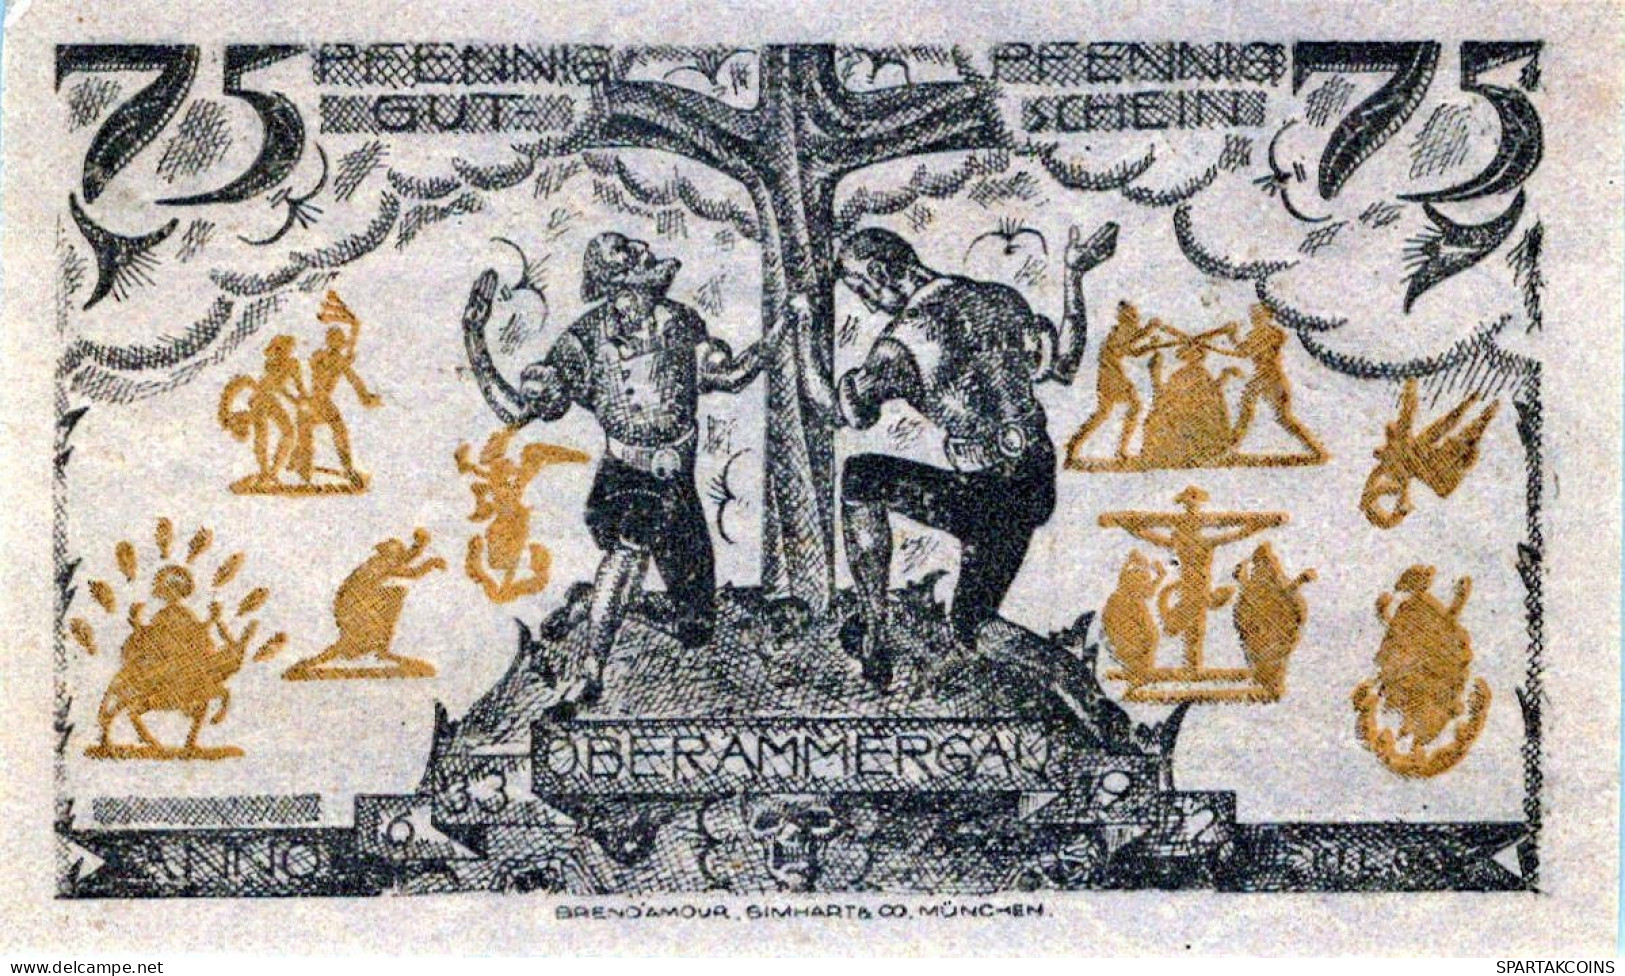 75 PFENNIG 1921 Stadt OBERAMMERGAU Bavaria DEUTSCHLAND Notgeld Banknote #PD490 - Lokale Ausgaben